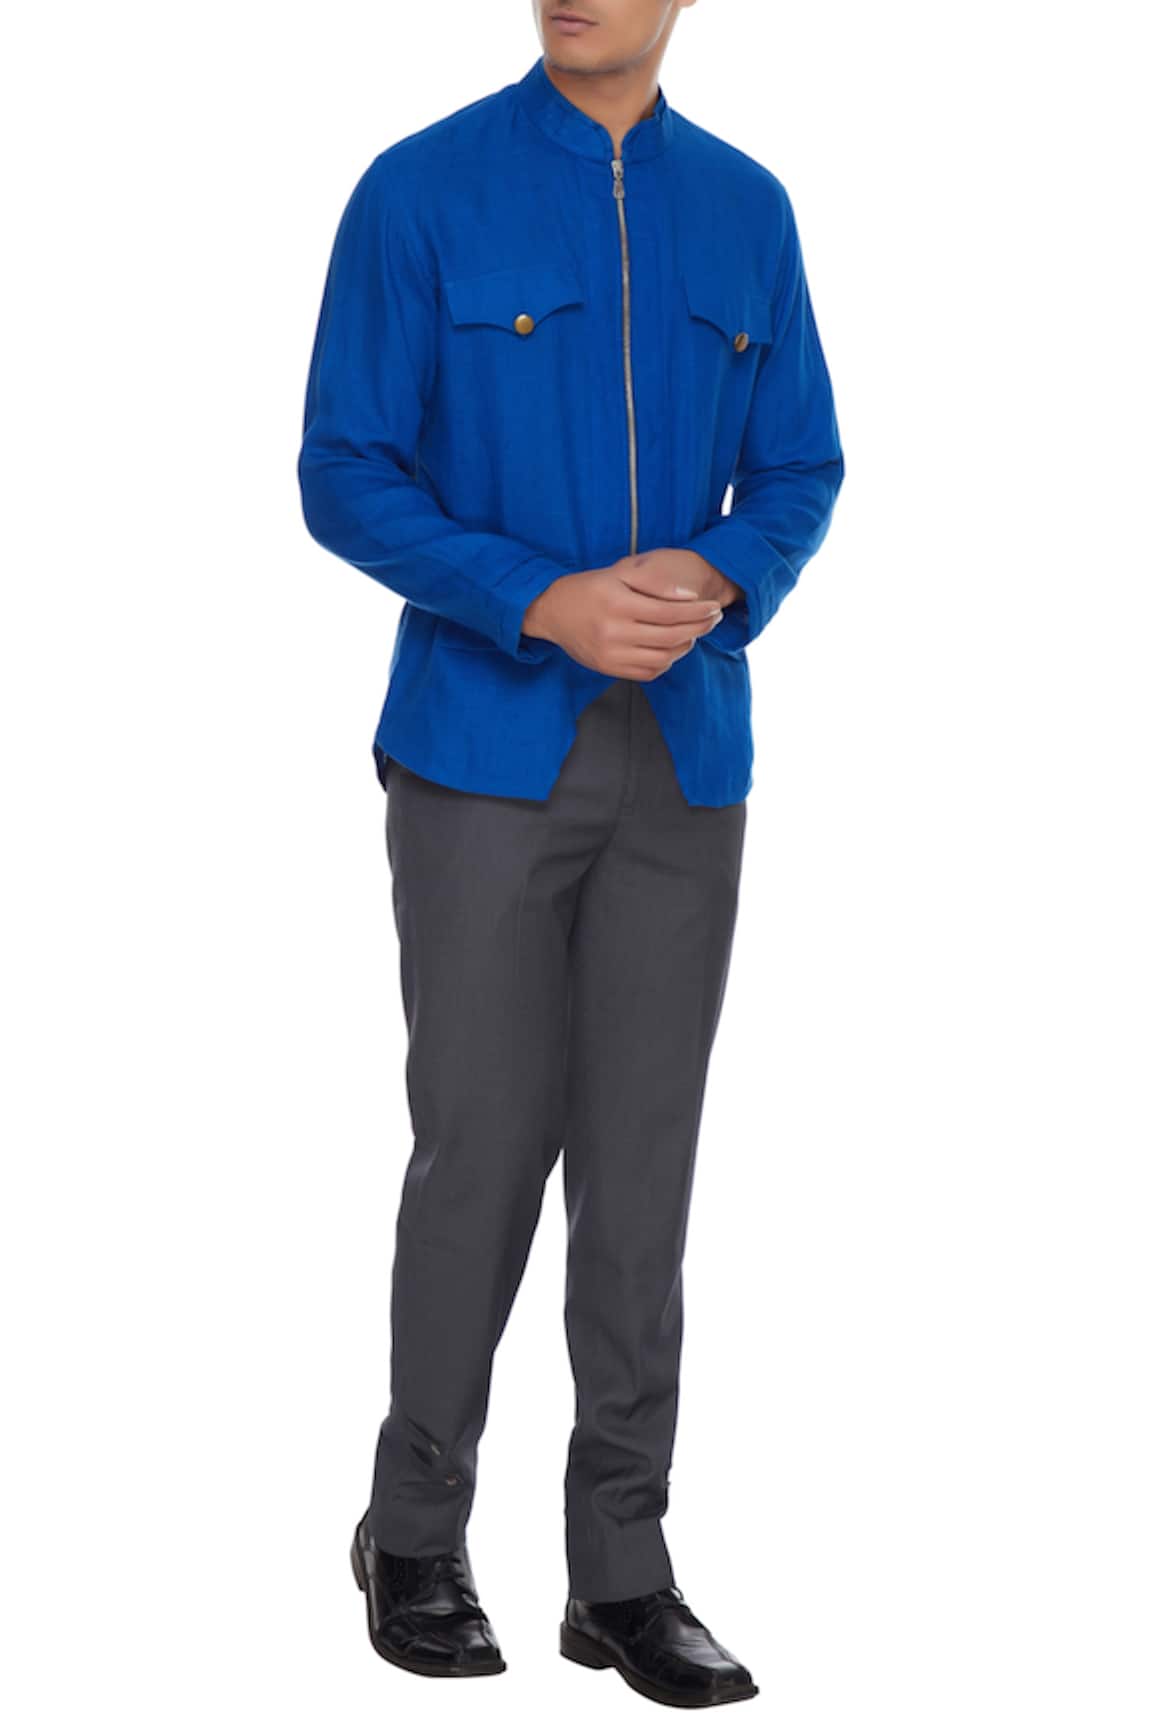 Barkha 'N' Sonzal Royal blue linen zipper style shirt